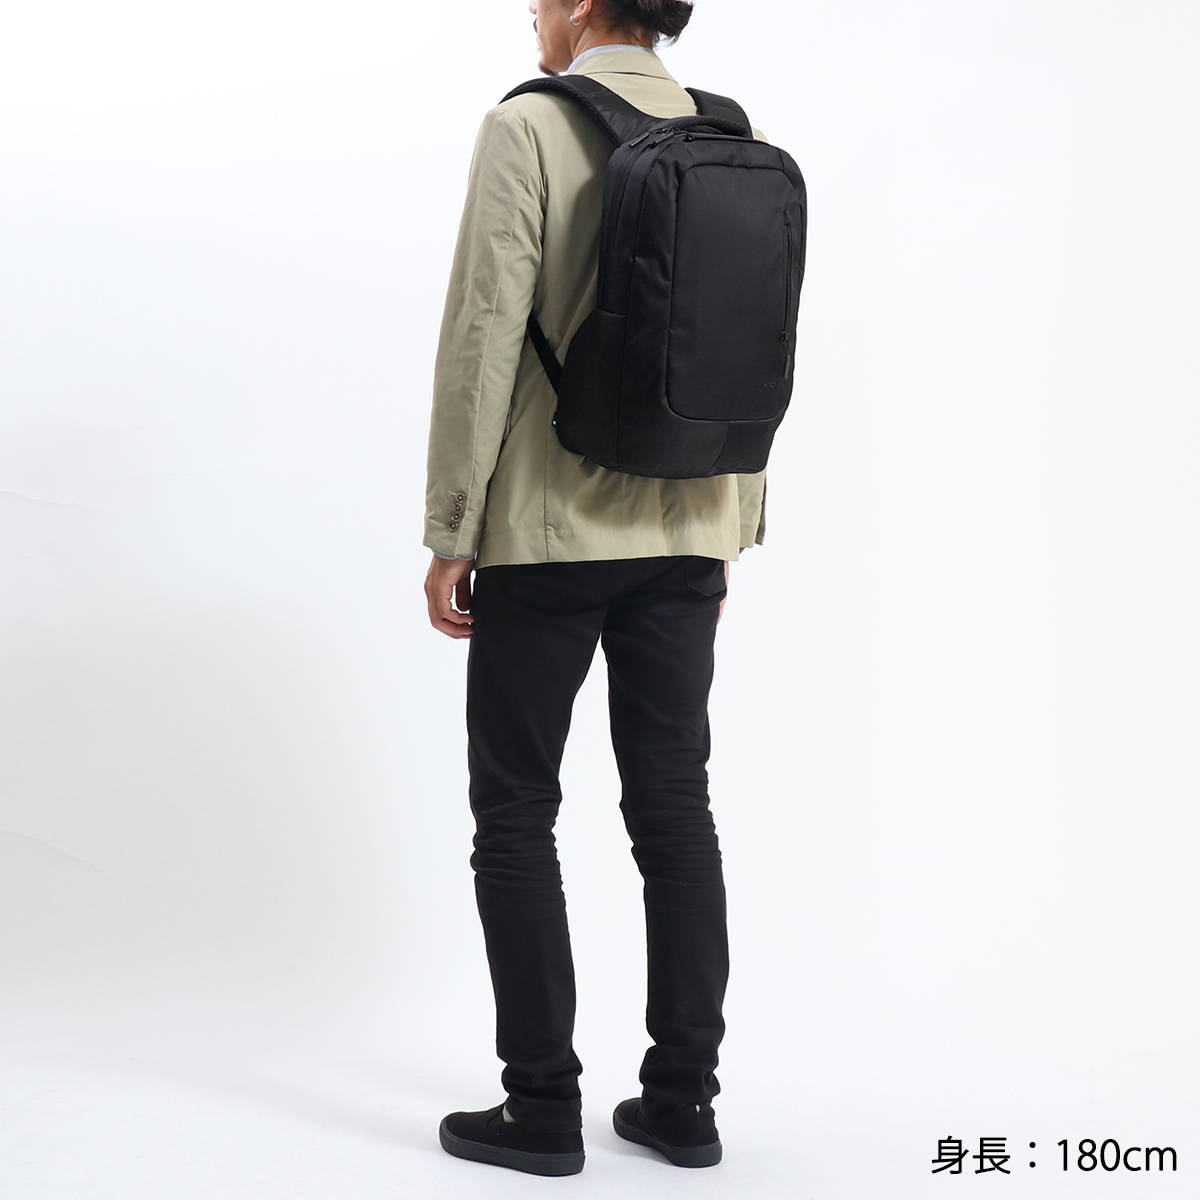 【日本正規品】incase インケース Nylon Lite Backpack バックパック